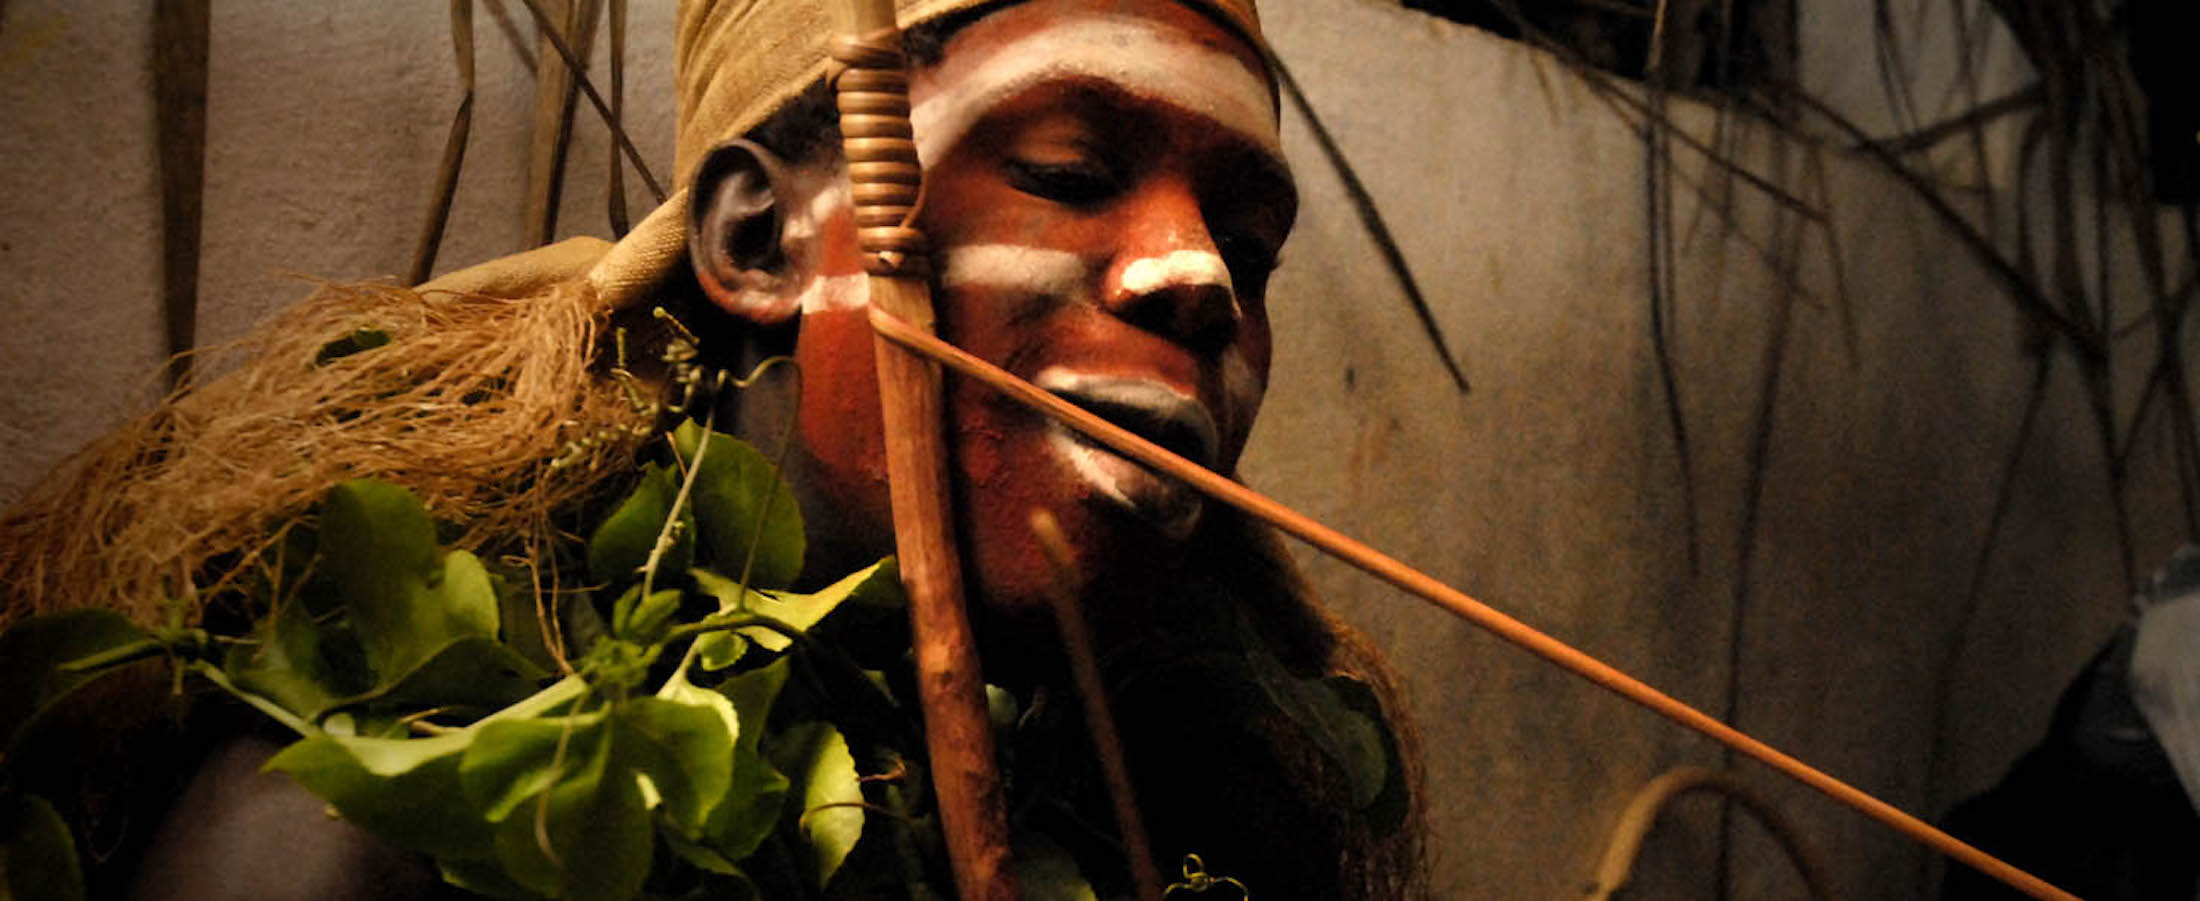 Bwiti man in initiation Iboga ritual with Ibogaine